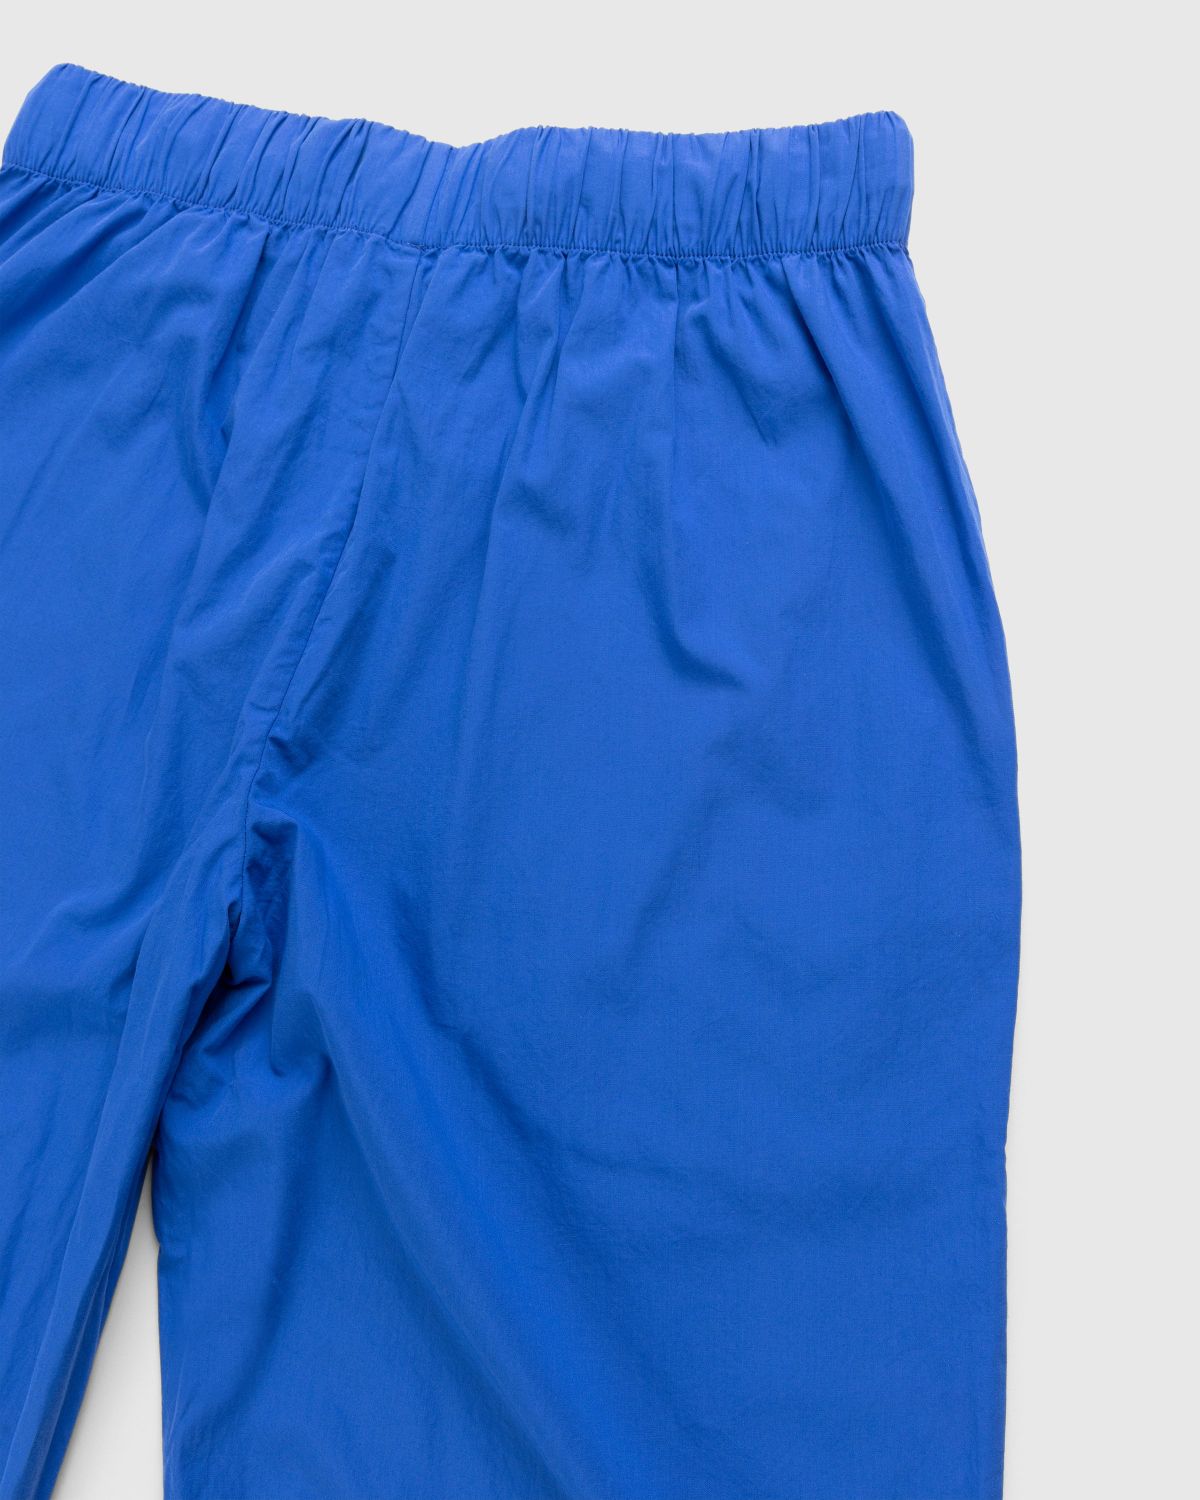 Tekla – Cotton Poplin Pyjamas Pants Royal Blue - Pyjamas - Blue - Image 3